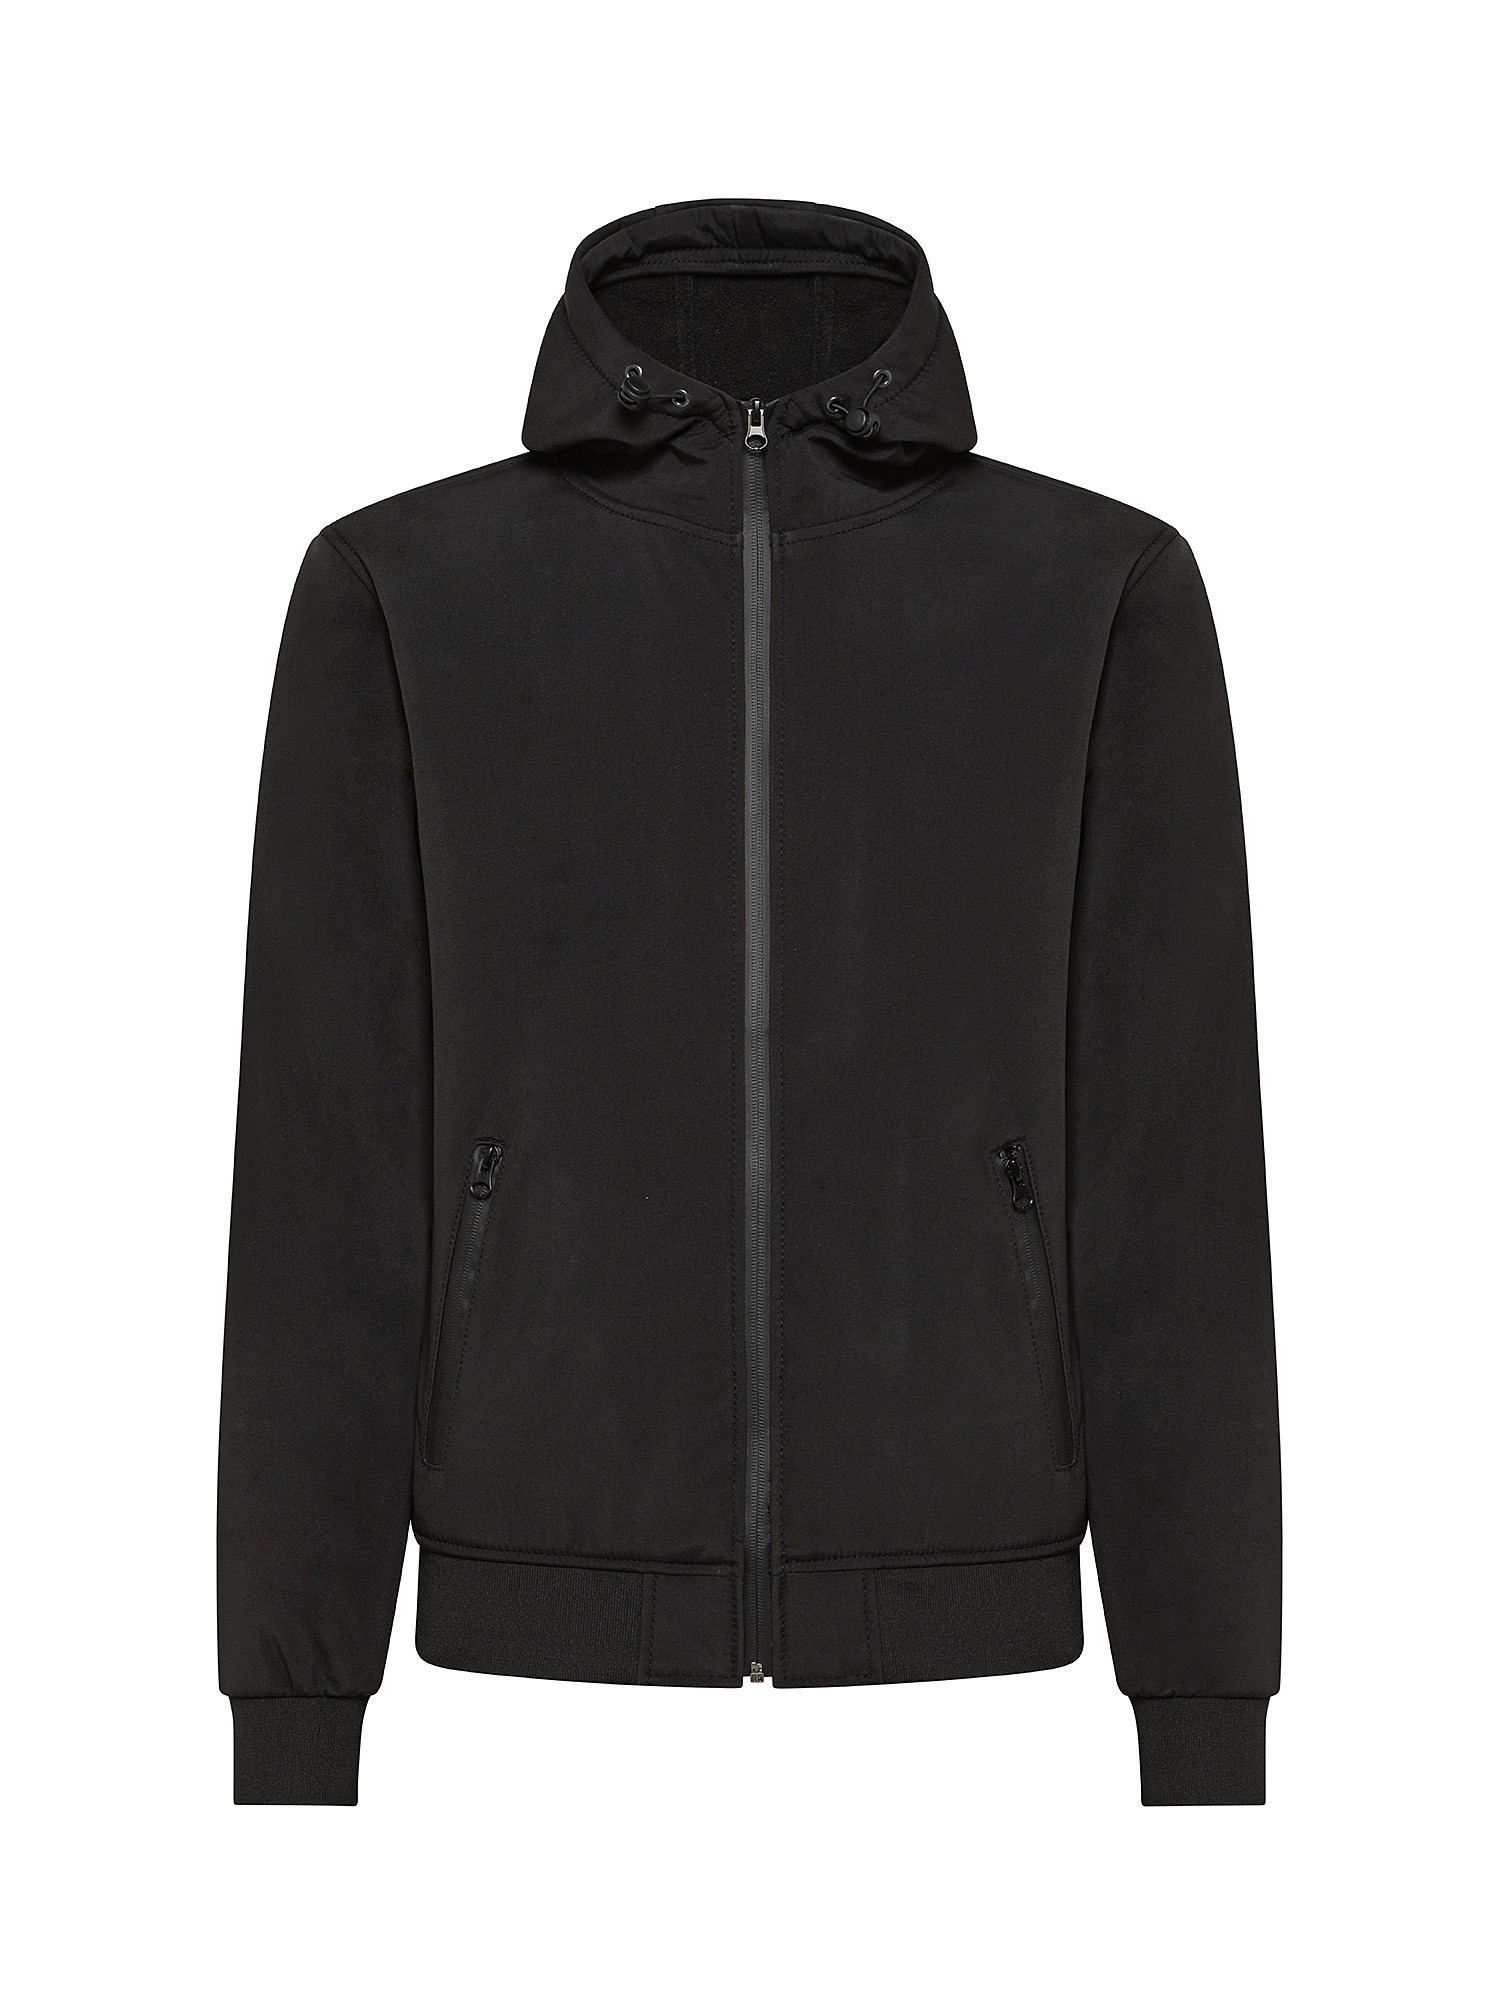 Hooded jacket, Black, large image number 0